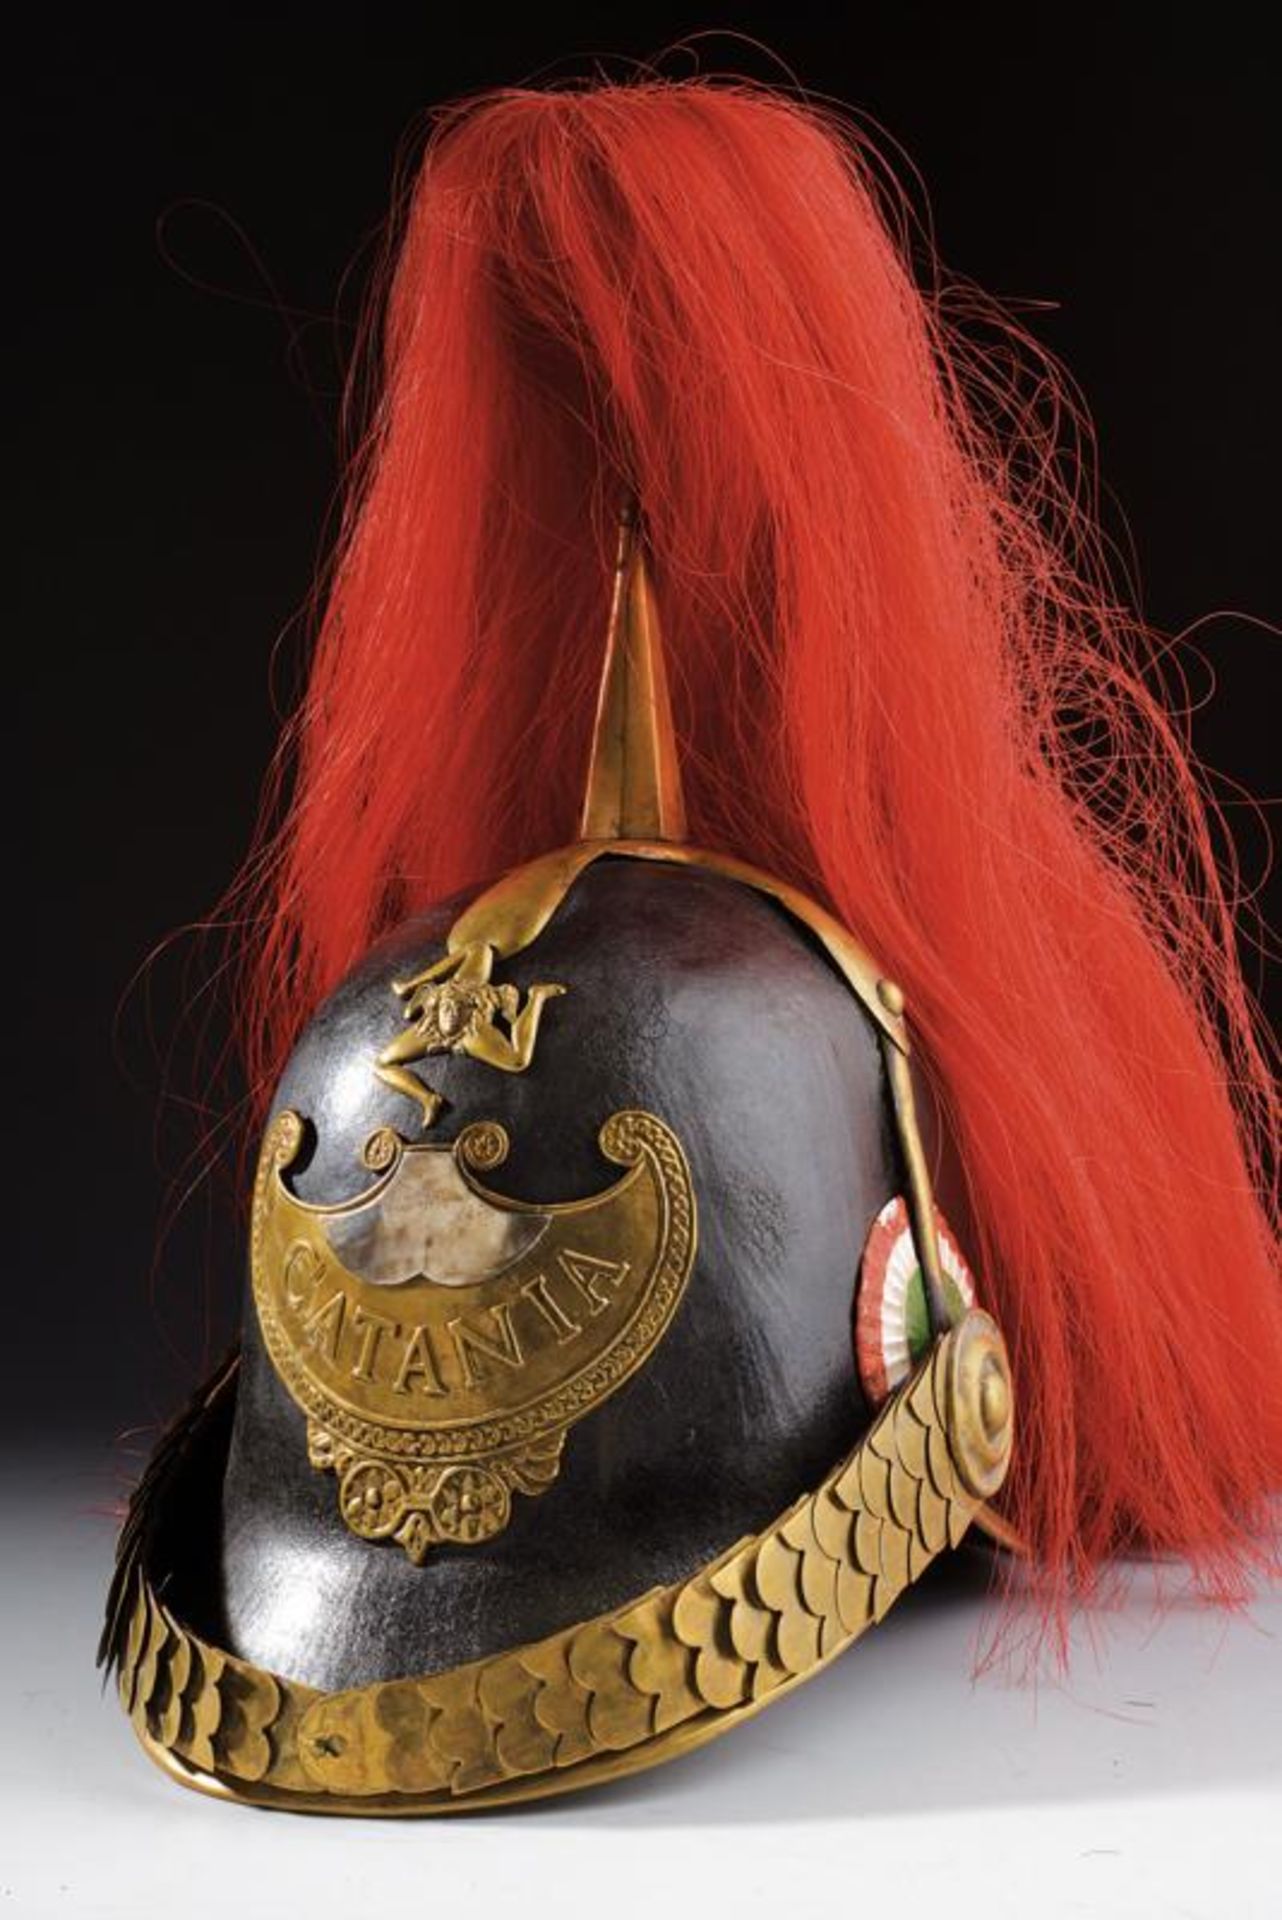 A Catania Civic Guard's helmet